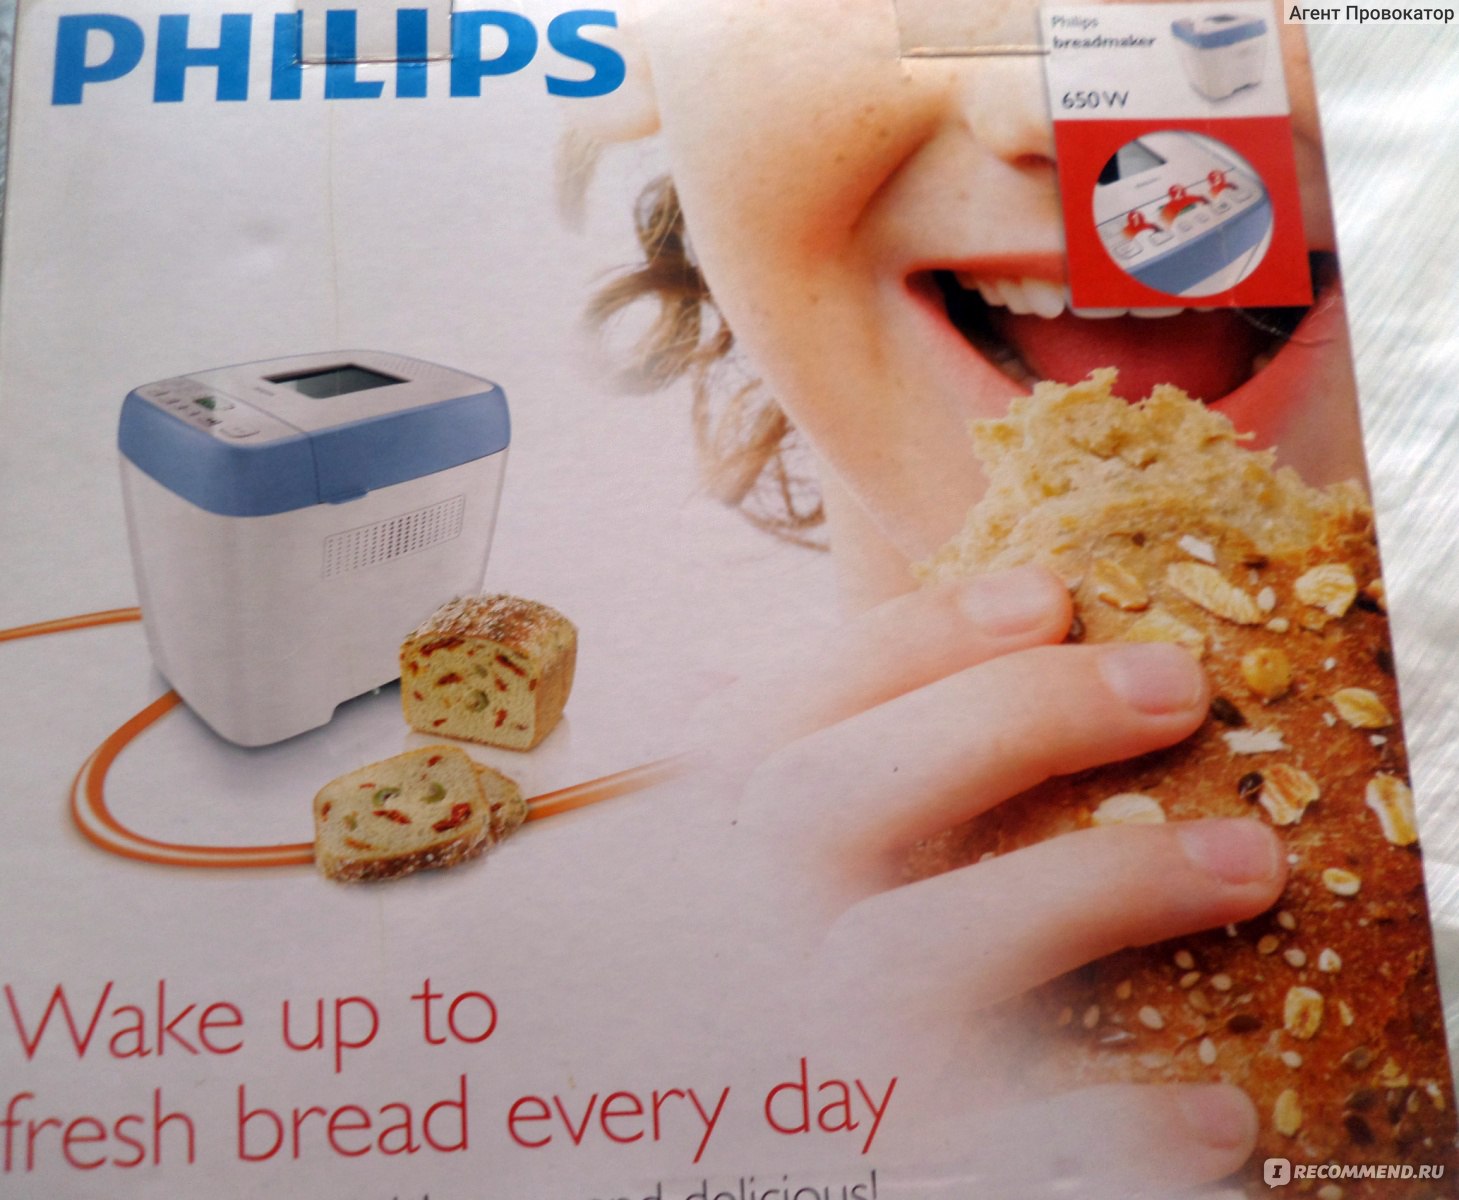 Хлебопечка филипс рецепты. Хлебопечка Филипс hd9020. Philips Breadmaker hd9020. Схема хлебопечка Филипс hd9020. Philips hd9020 рецепты.